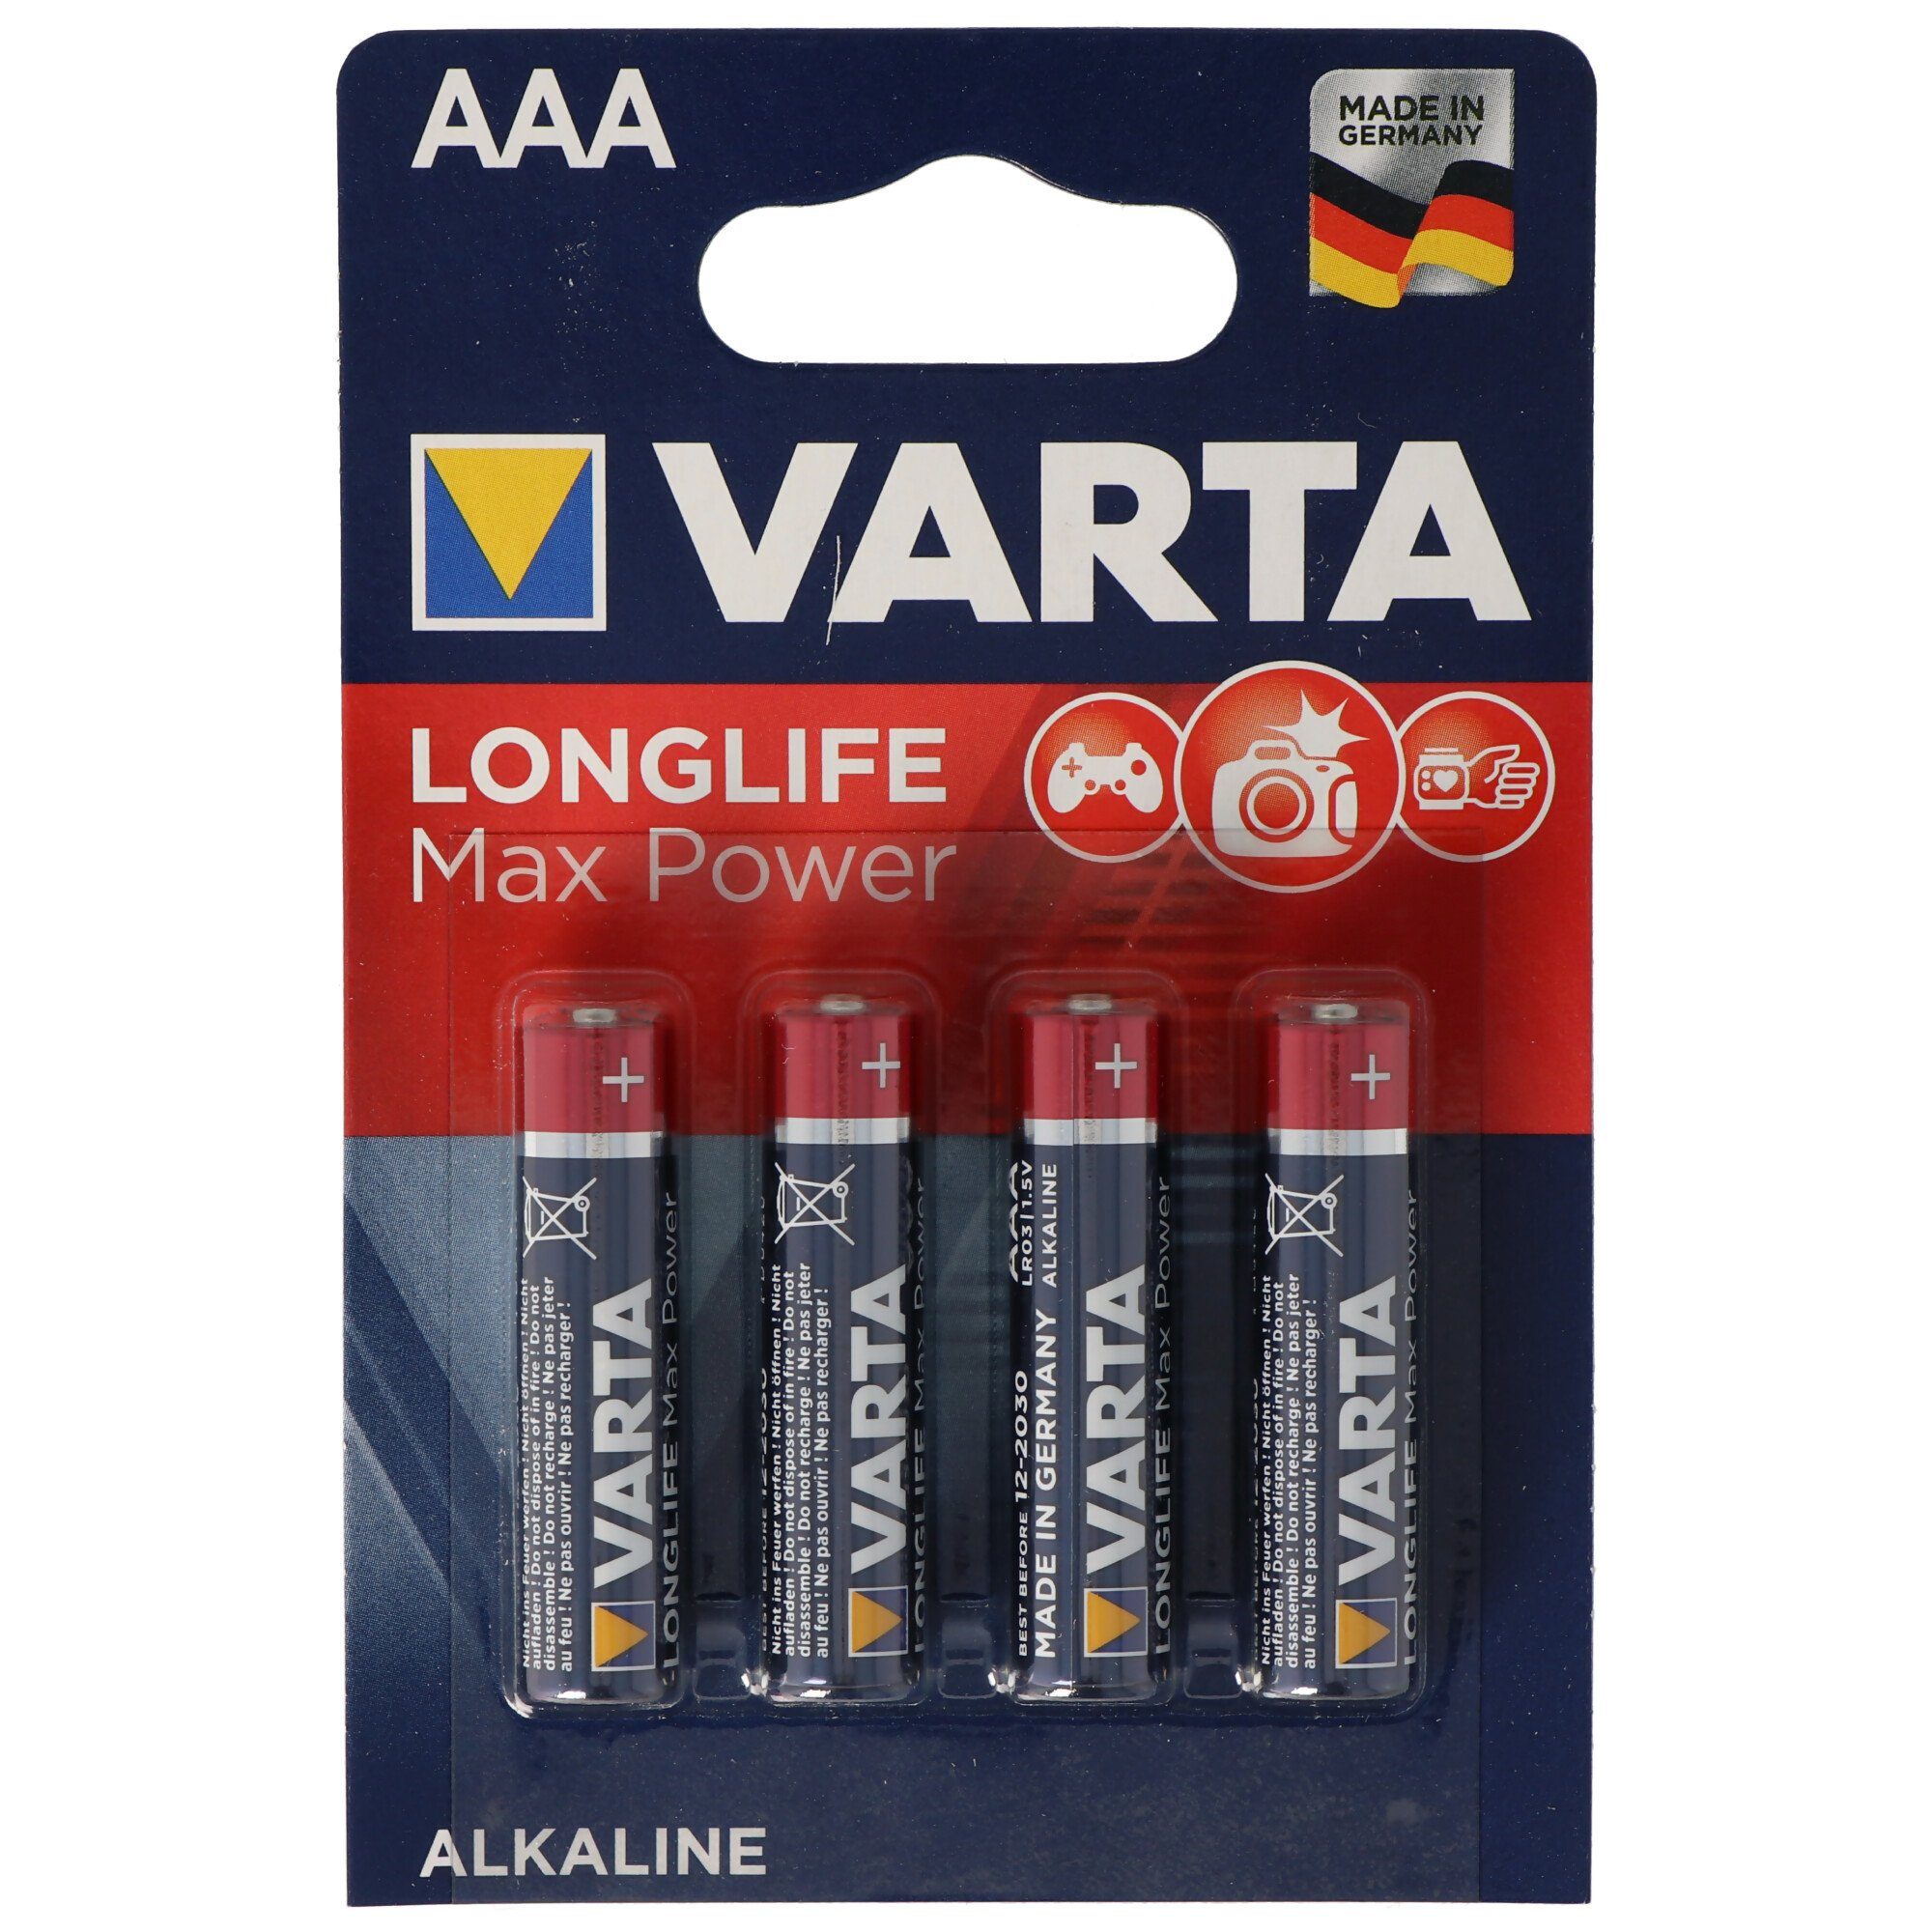 VARTA Varta Longlife Max Power (ehem. Max-Tech) 4703 Micro AAA Batterien 4- Batterie, (1,5 V)